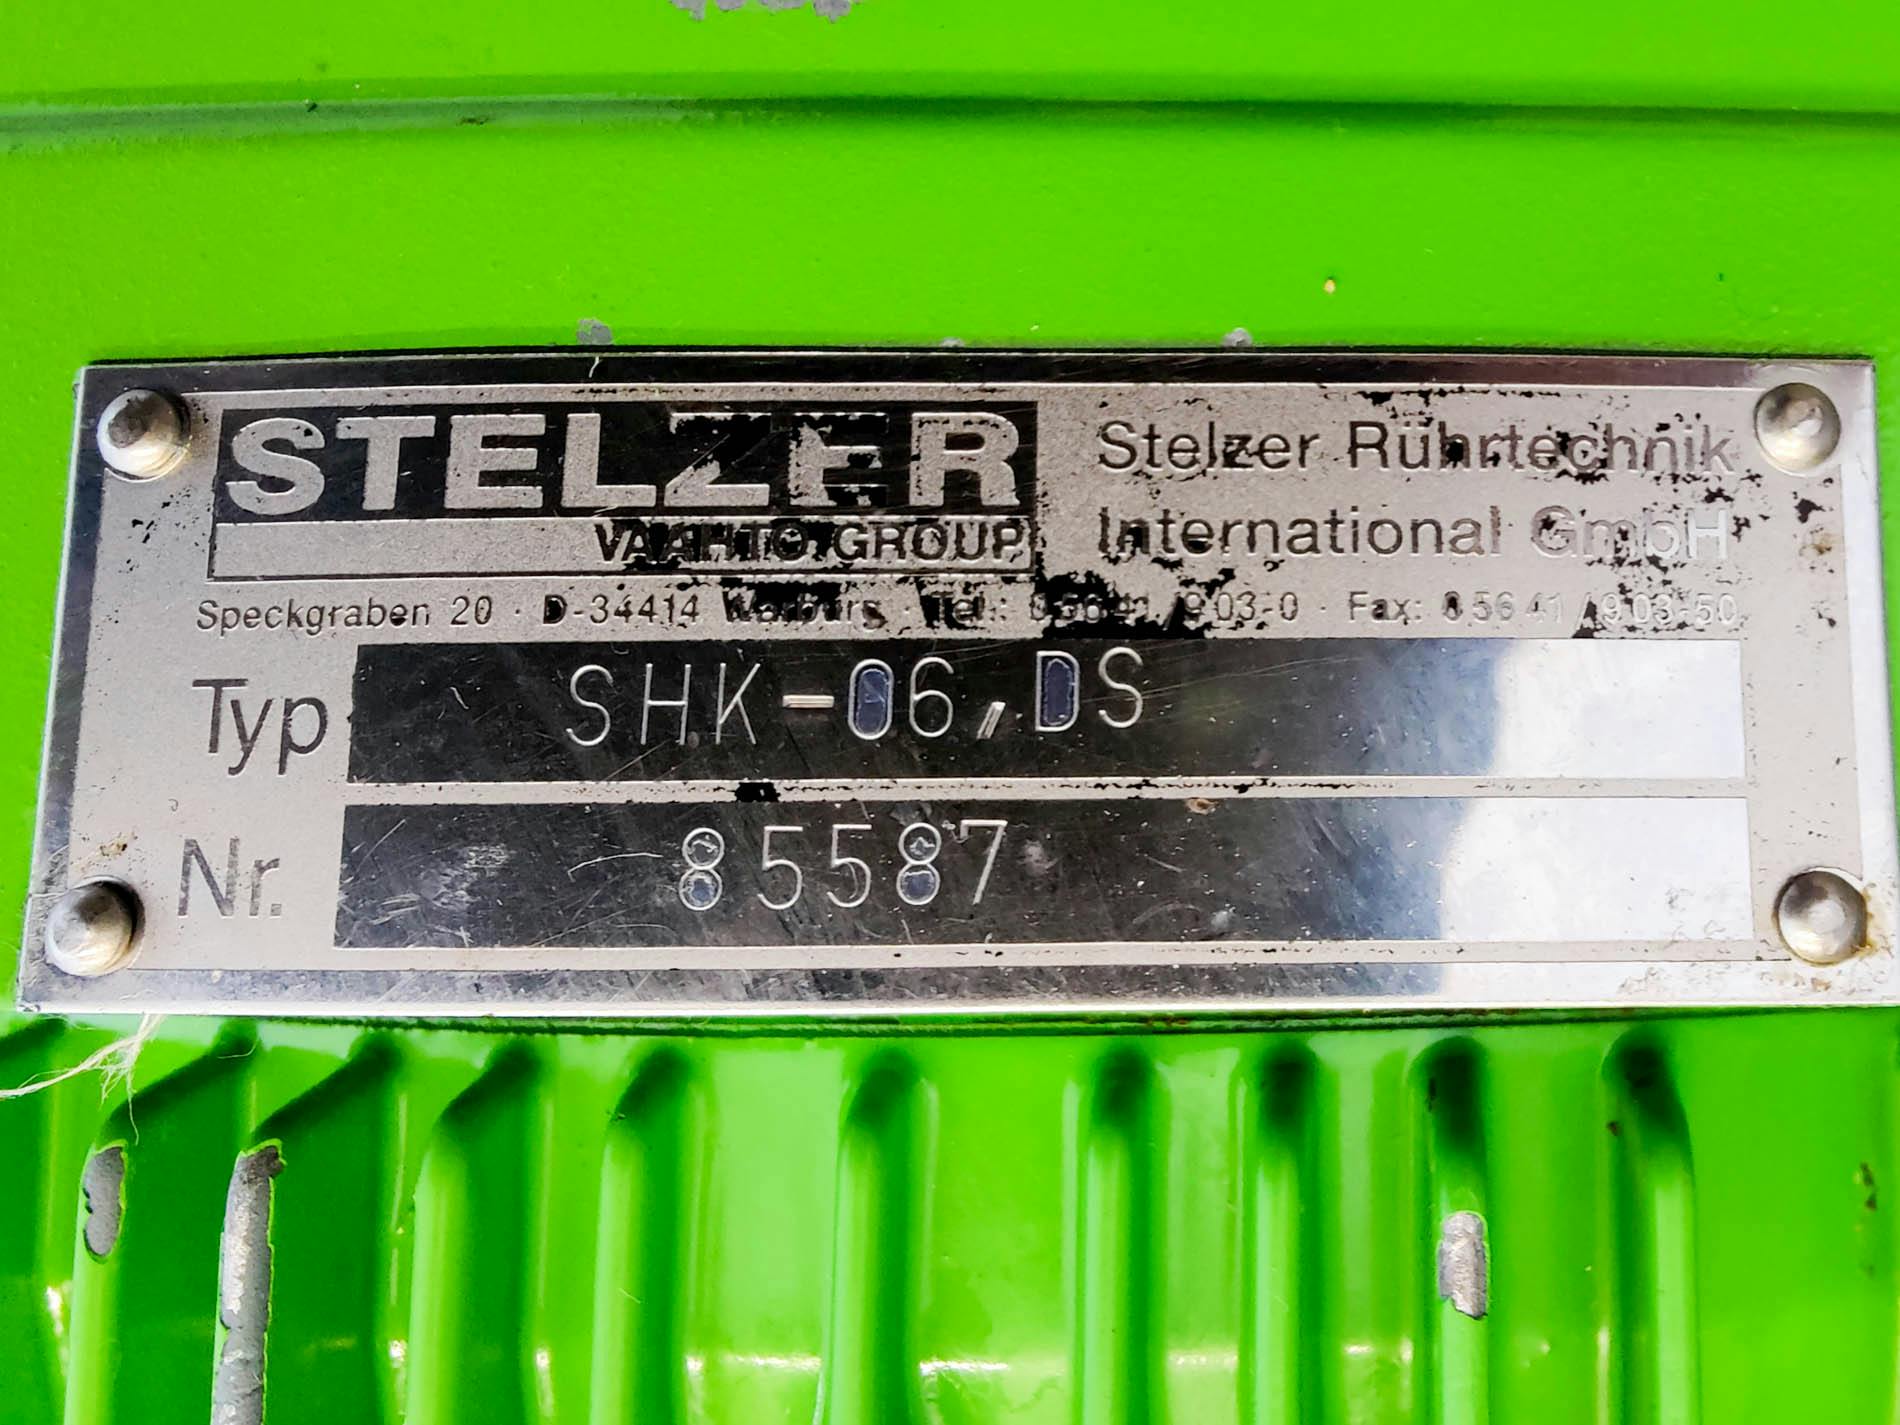 STC Engineering Stapelbehälter 6500 Ltr. - Rührkessel - image 6